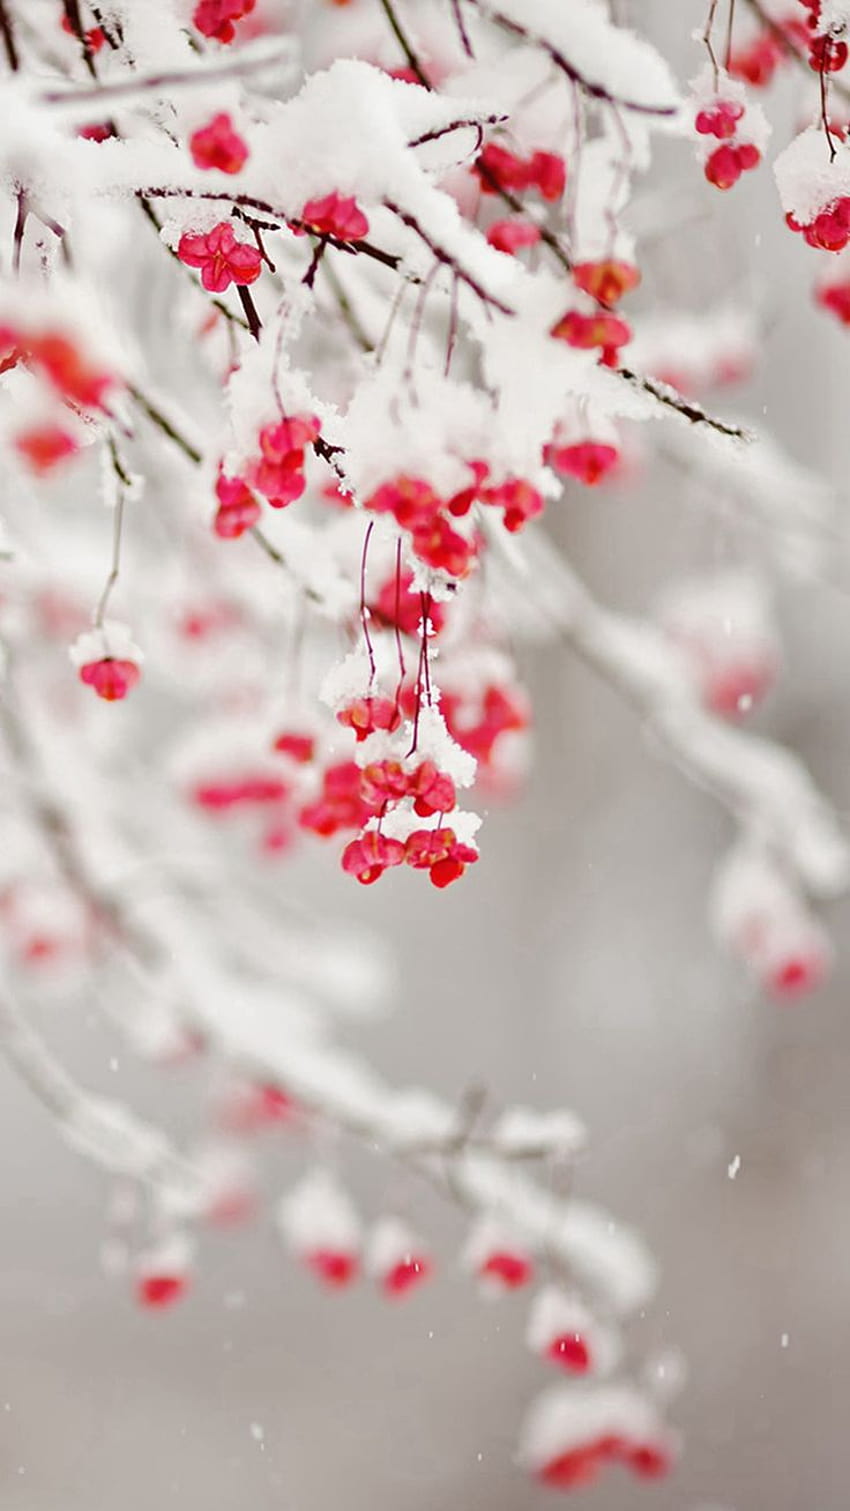 Winter Snowy Pure Icy Fruit Branch iPhone 6, lindo invierno iphone fondo de pantalla del teléfono